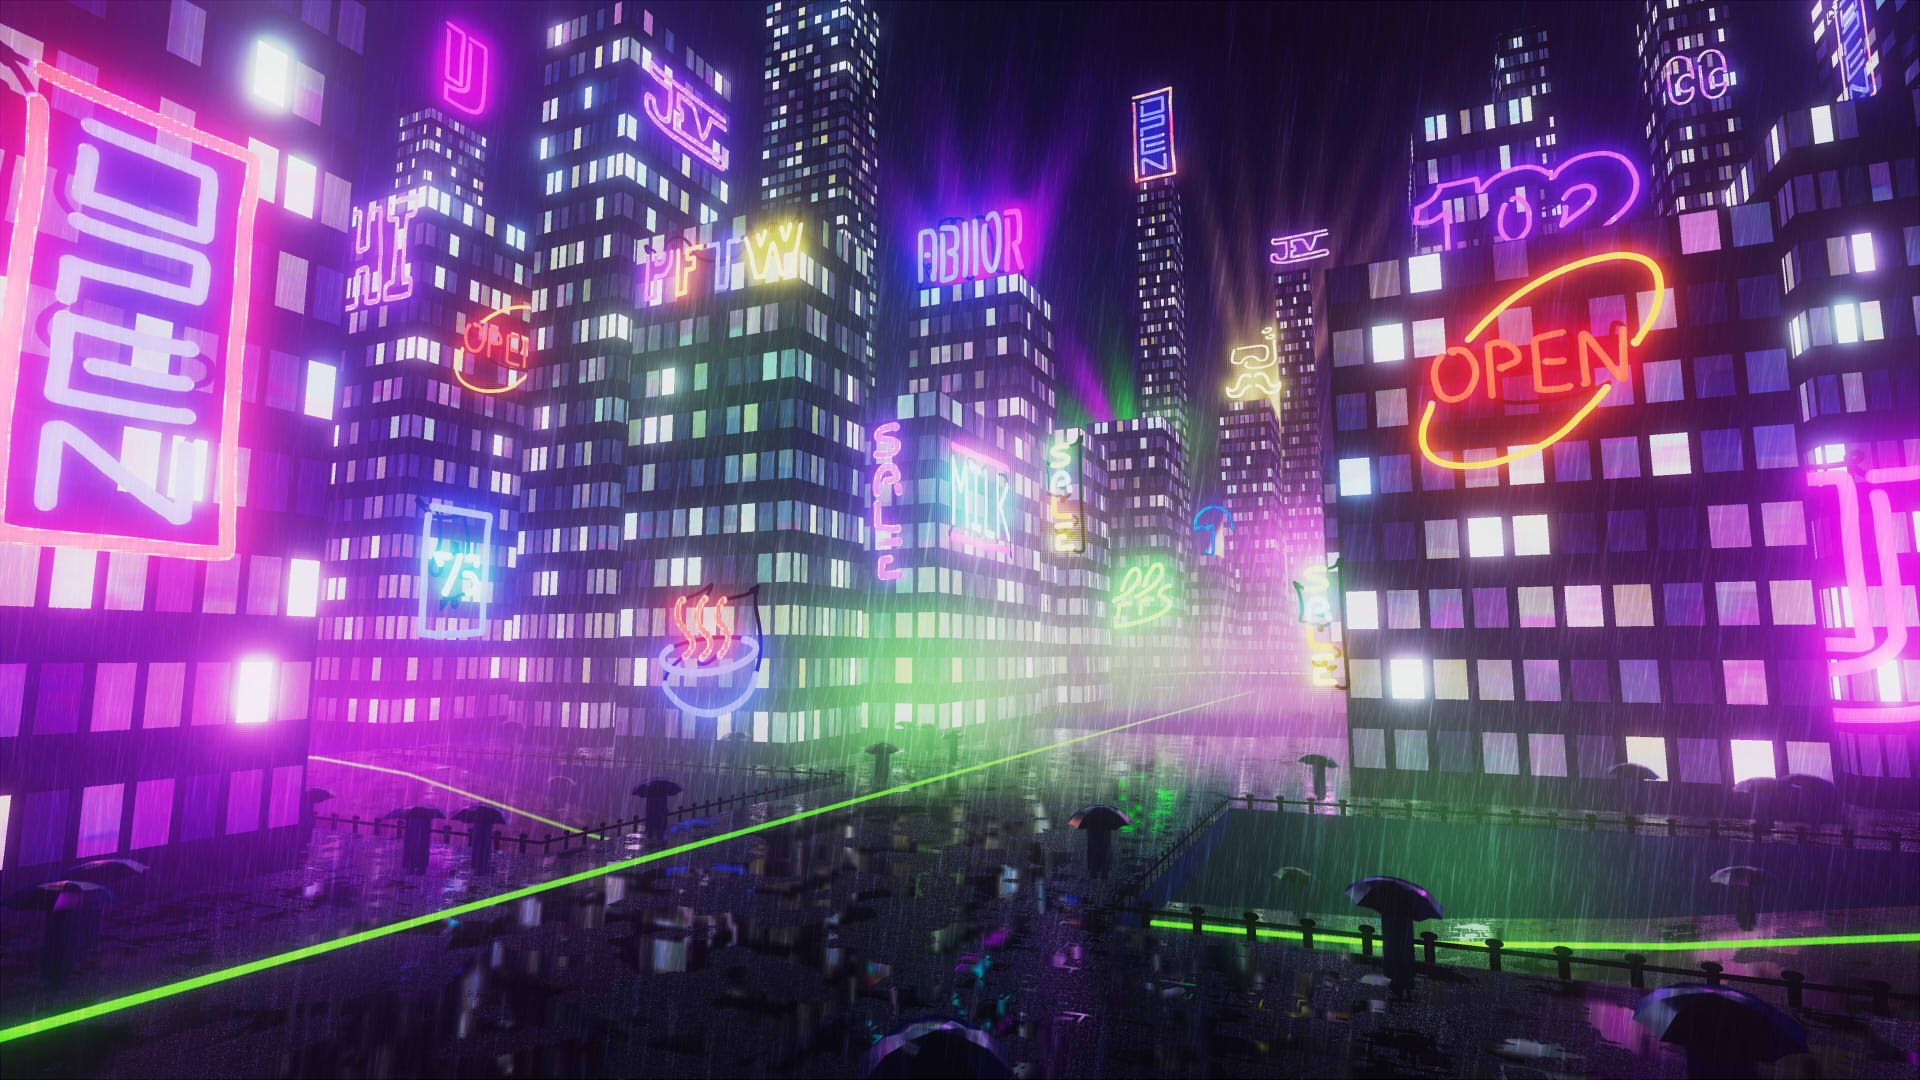 Neon City (2019) by Josien Vos